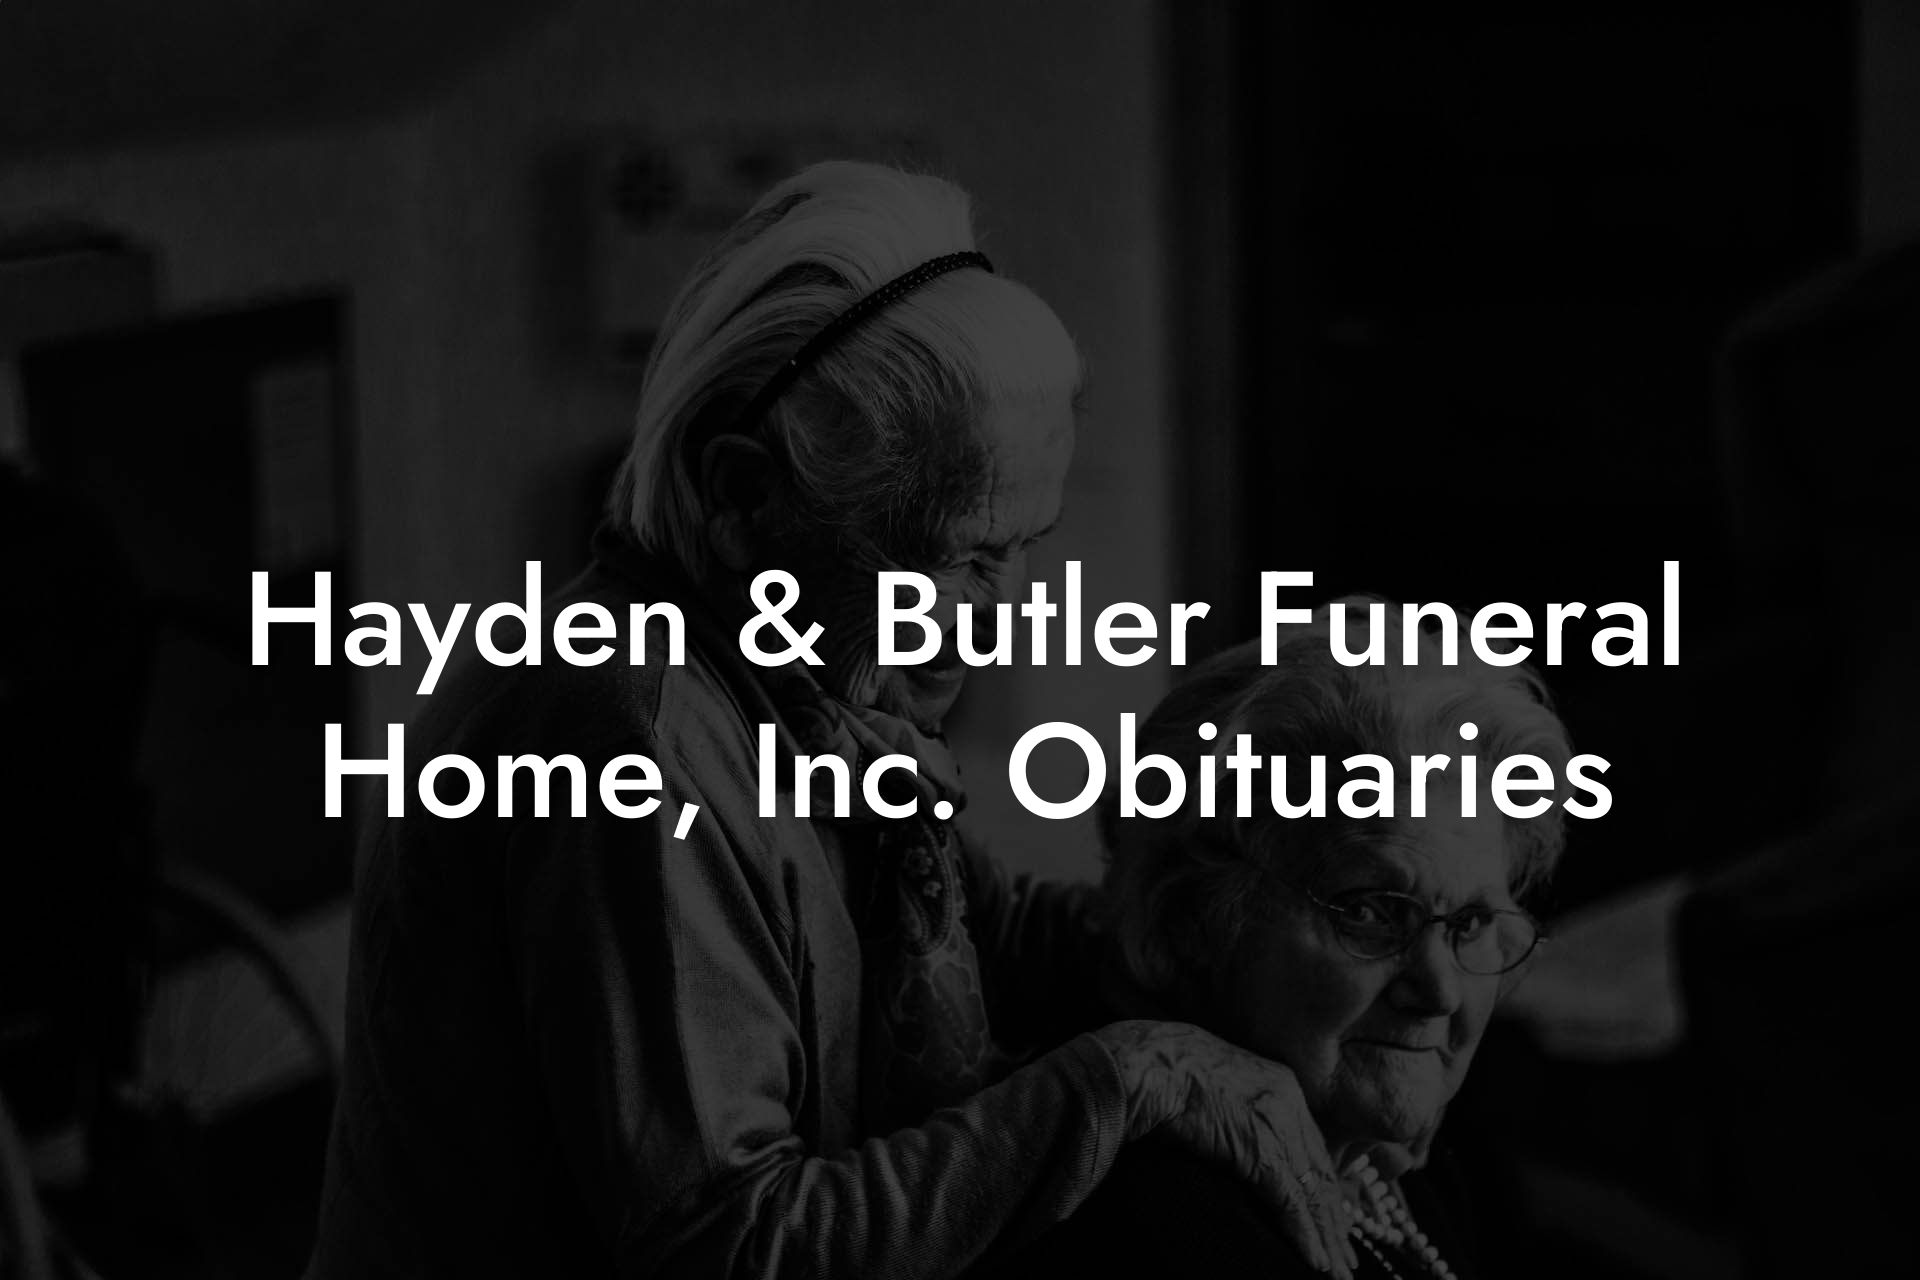 Hayden & Butler Funeral Home, Inc. Obituaries